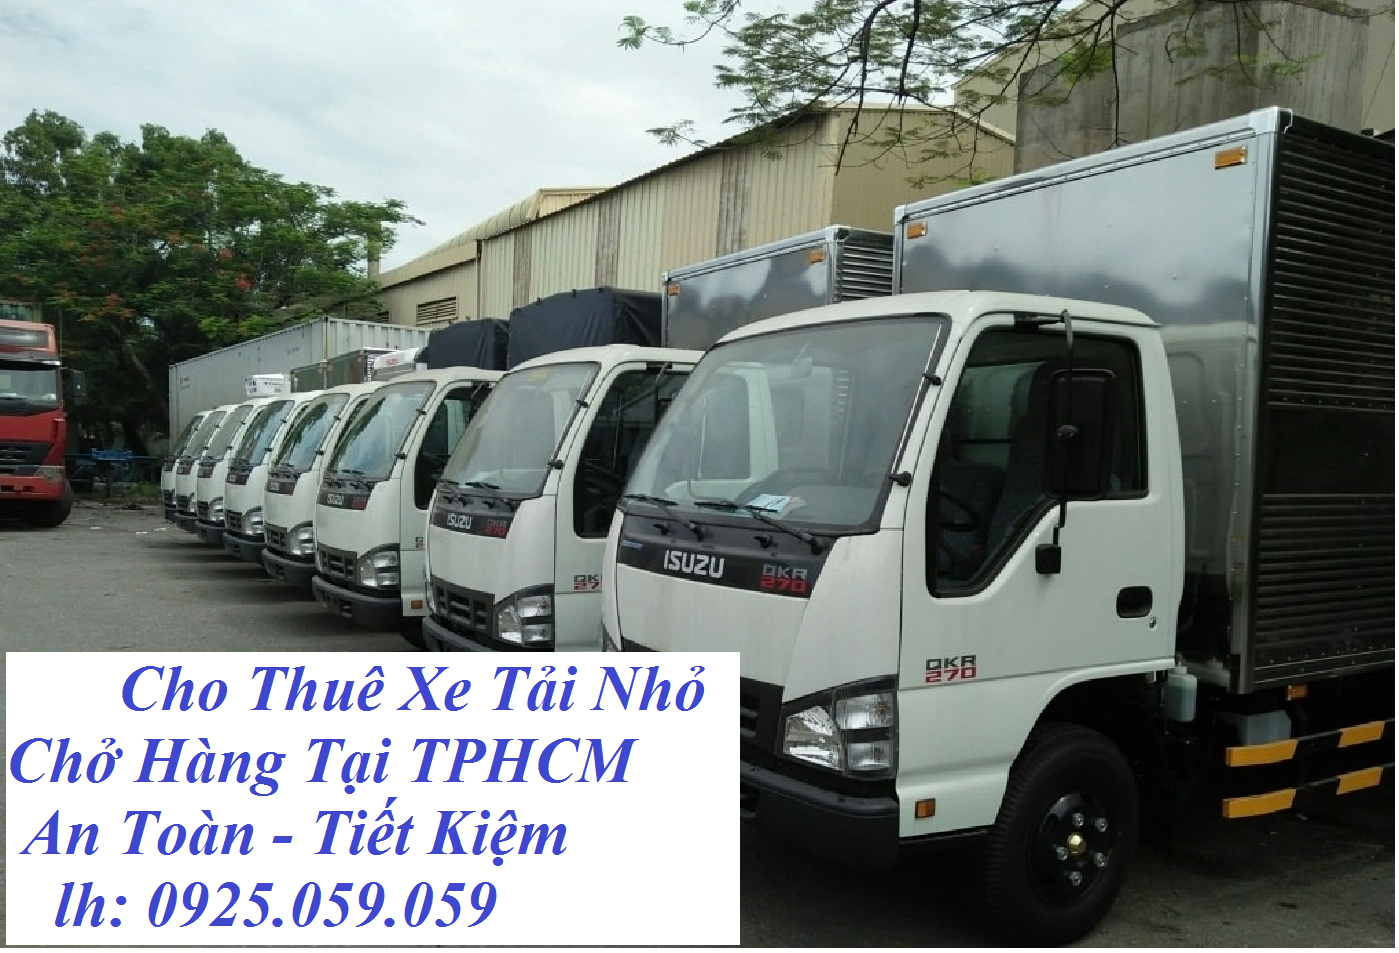 Cho thuê xe tải nhỏ chở hàng TPHCM